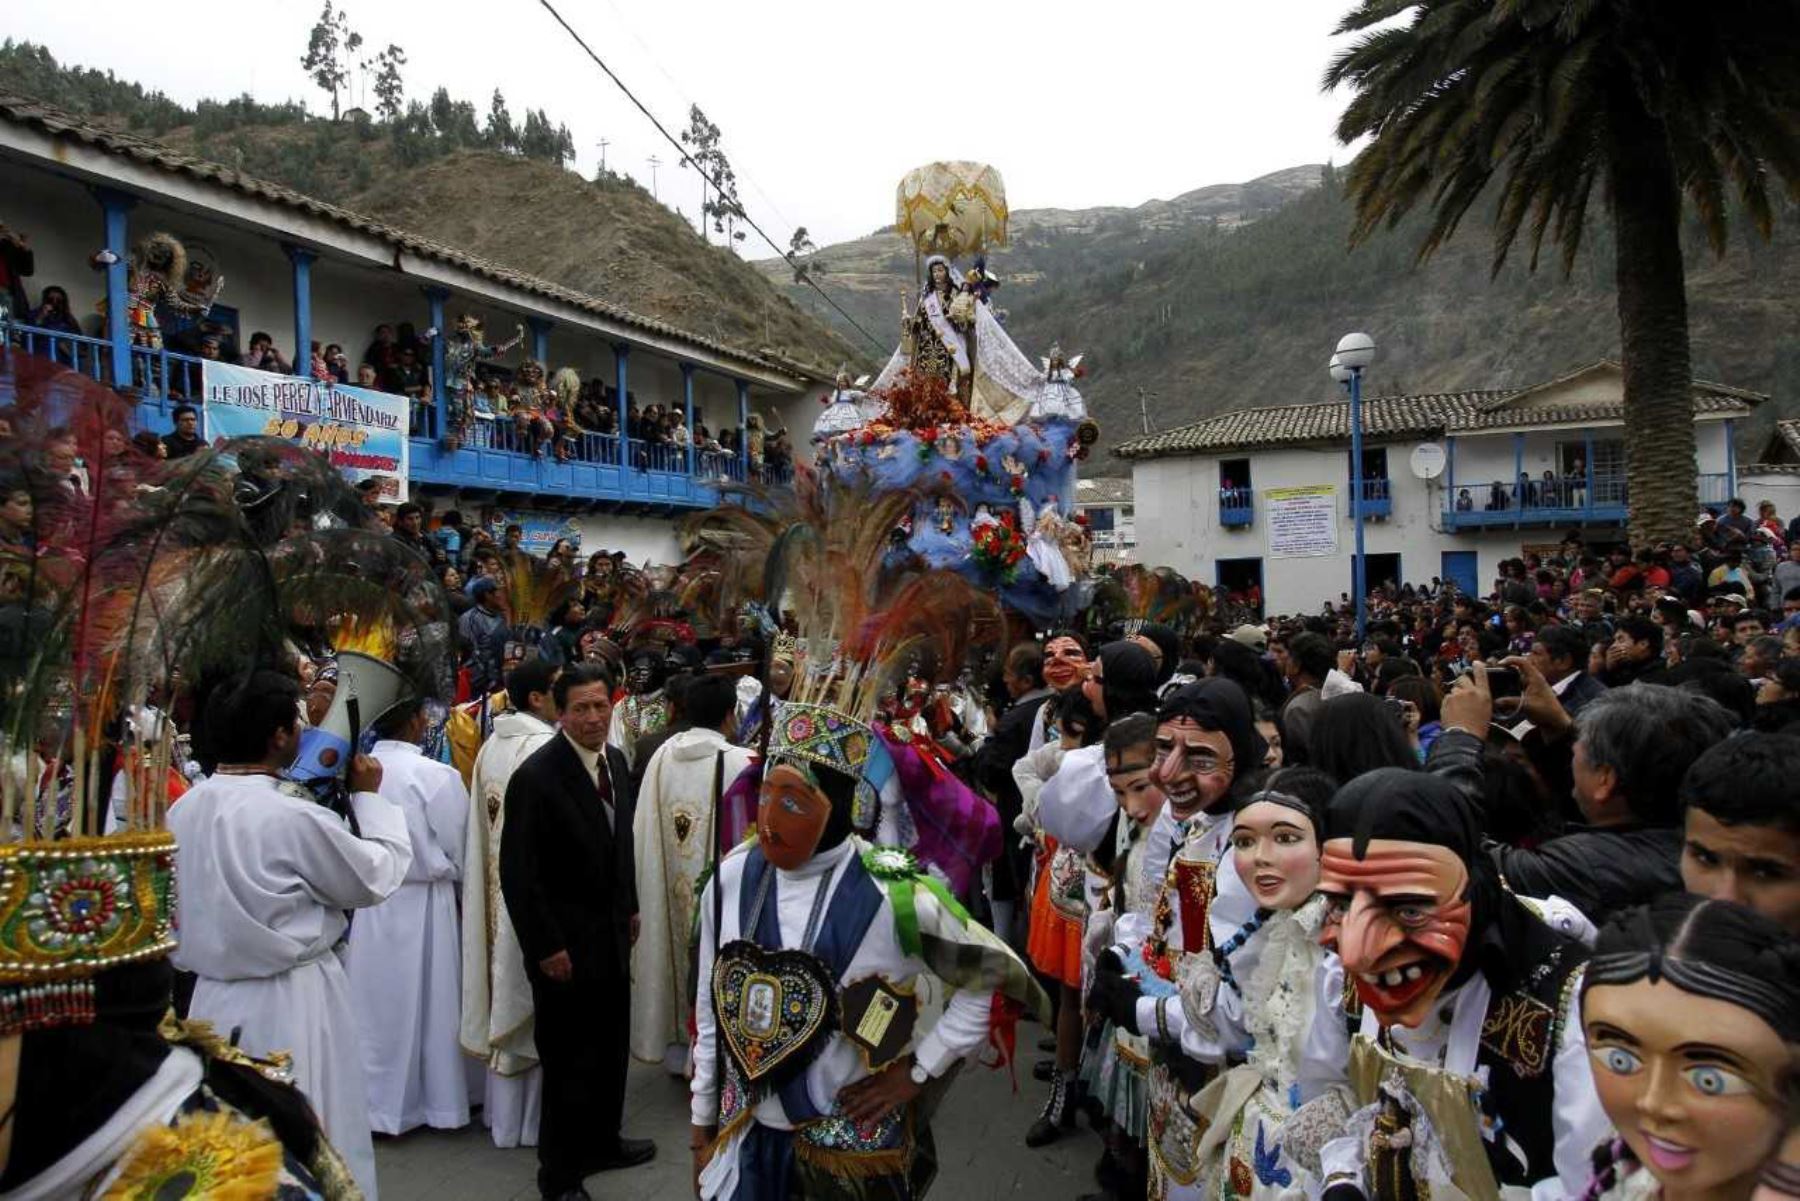 Una de las festividades religiosas, históricas y culturales más importantes en honor a la Virgen del Carmen se celebra desde hoy en Paucartambo, pequeño pueblo ubicado a orillas del río Mapacho, a solo dos horas en auto desde la ciudad del Cusco.